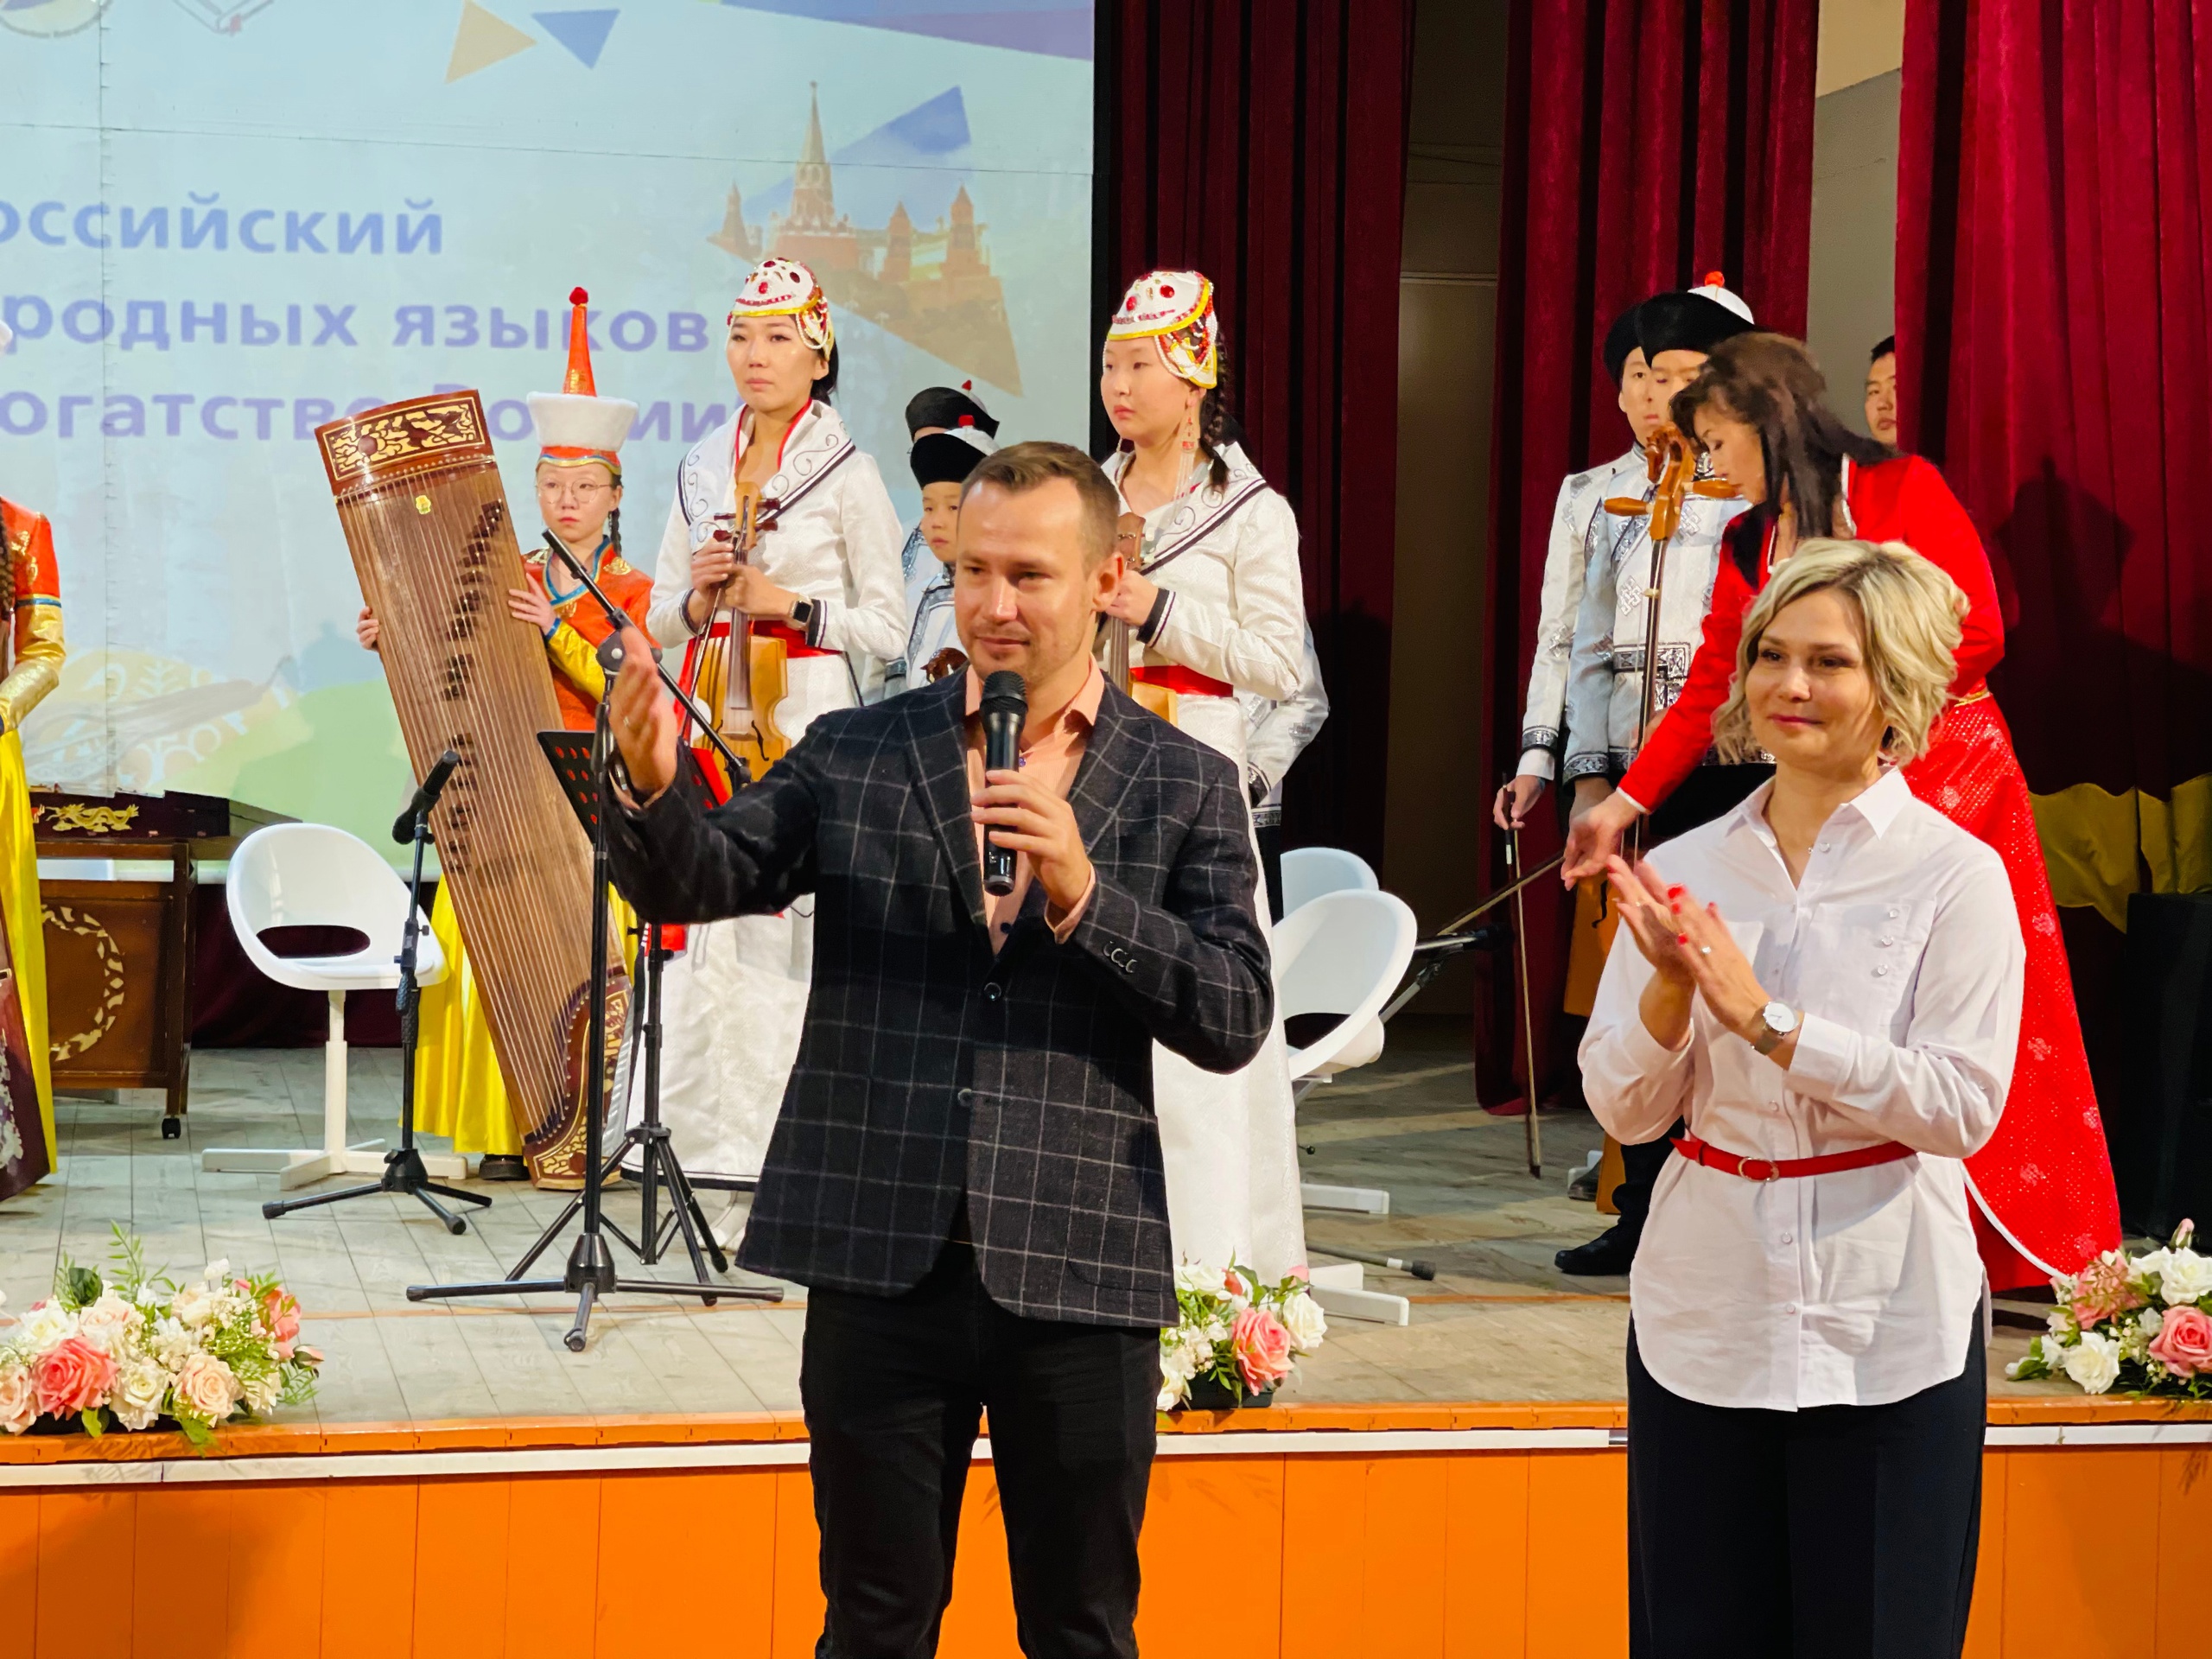 Всероссийский фестиваль родных языков «Языковое богатство России» шагает по стране и вот уже эстафету принимает Забайкальский край